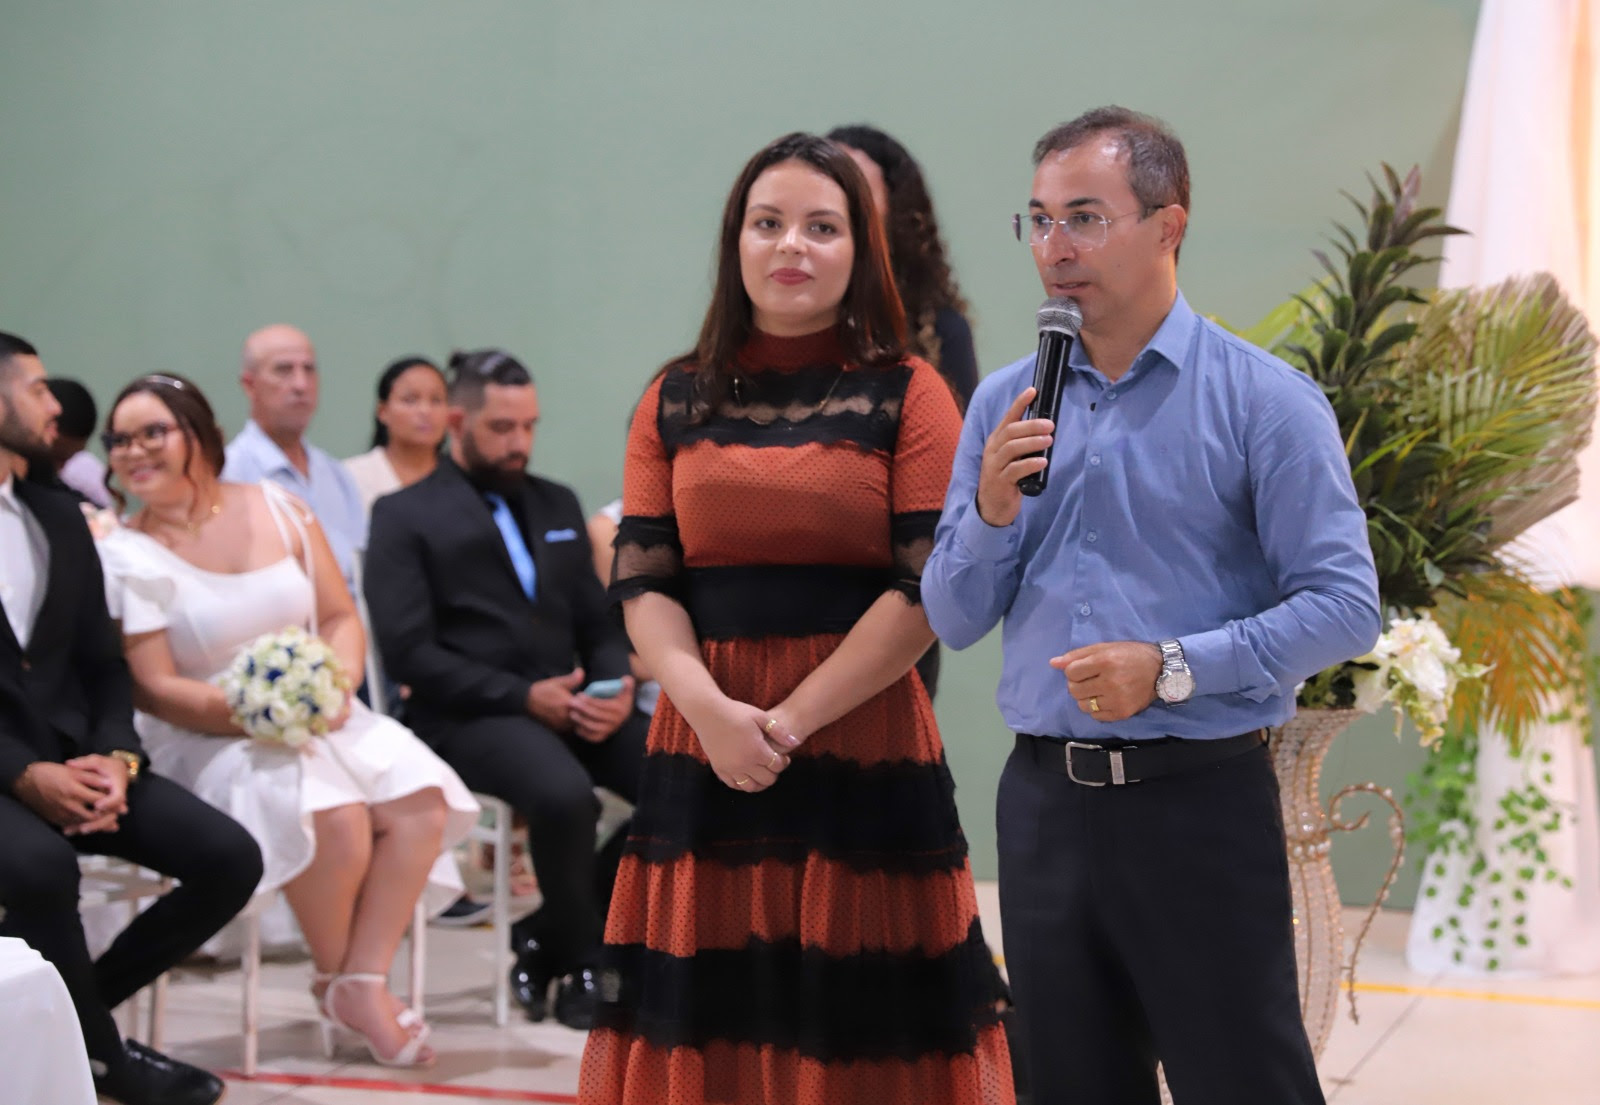 “Muitos queriam casar e não tinham oportunidade e aqui está sendo proporcionado esse momento importantíssimo, que para muitos é um sonho!”, ressaltou o prefeito Wagner Rodrigues, presente no evento junto da esposa e primeira-dama, Ana Paula.